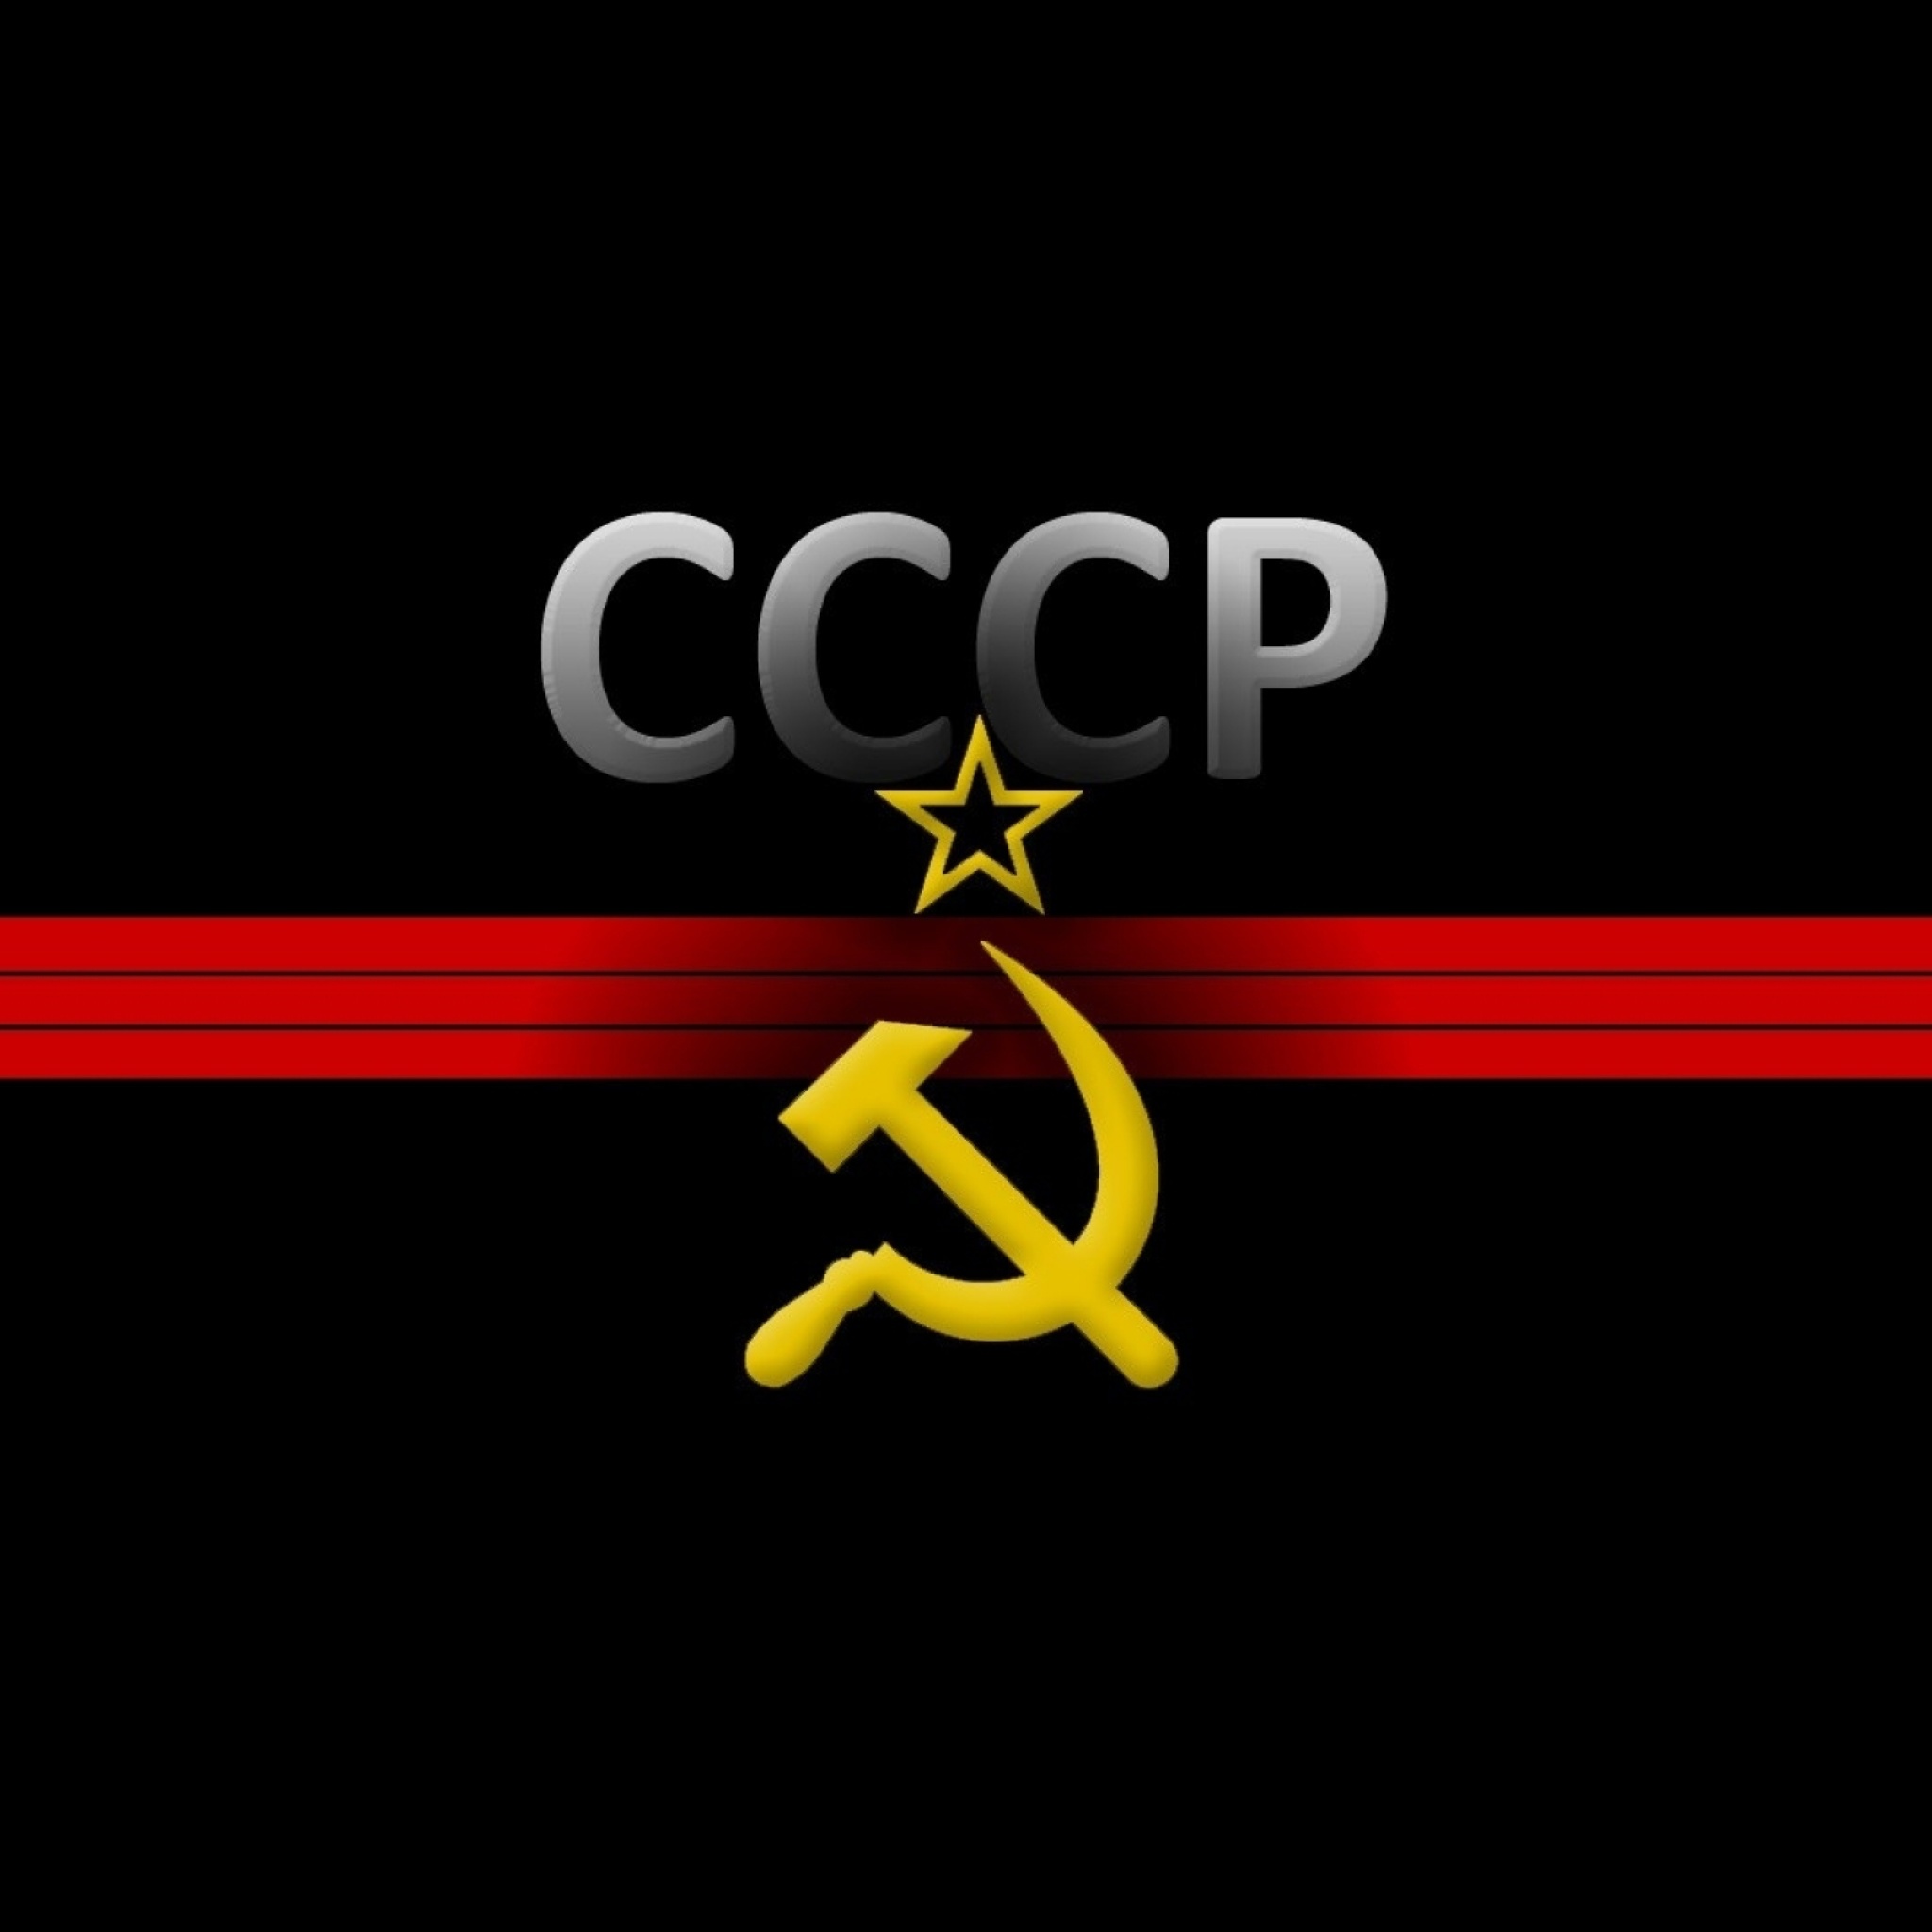 USSR and Communism Symbol screenshot #1 2048x2048